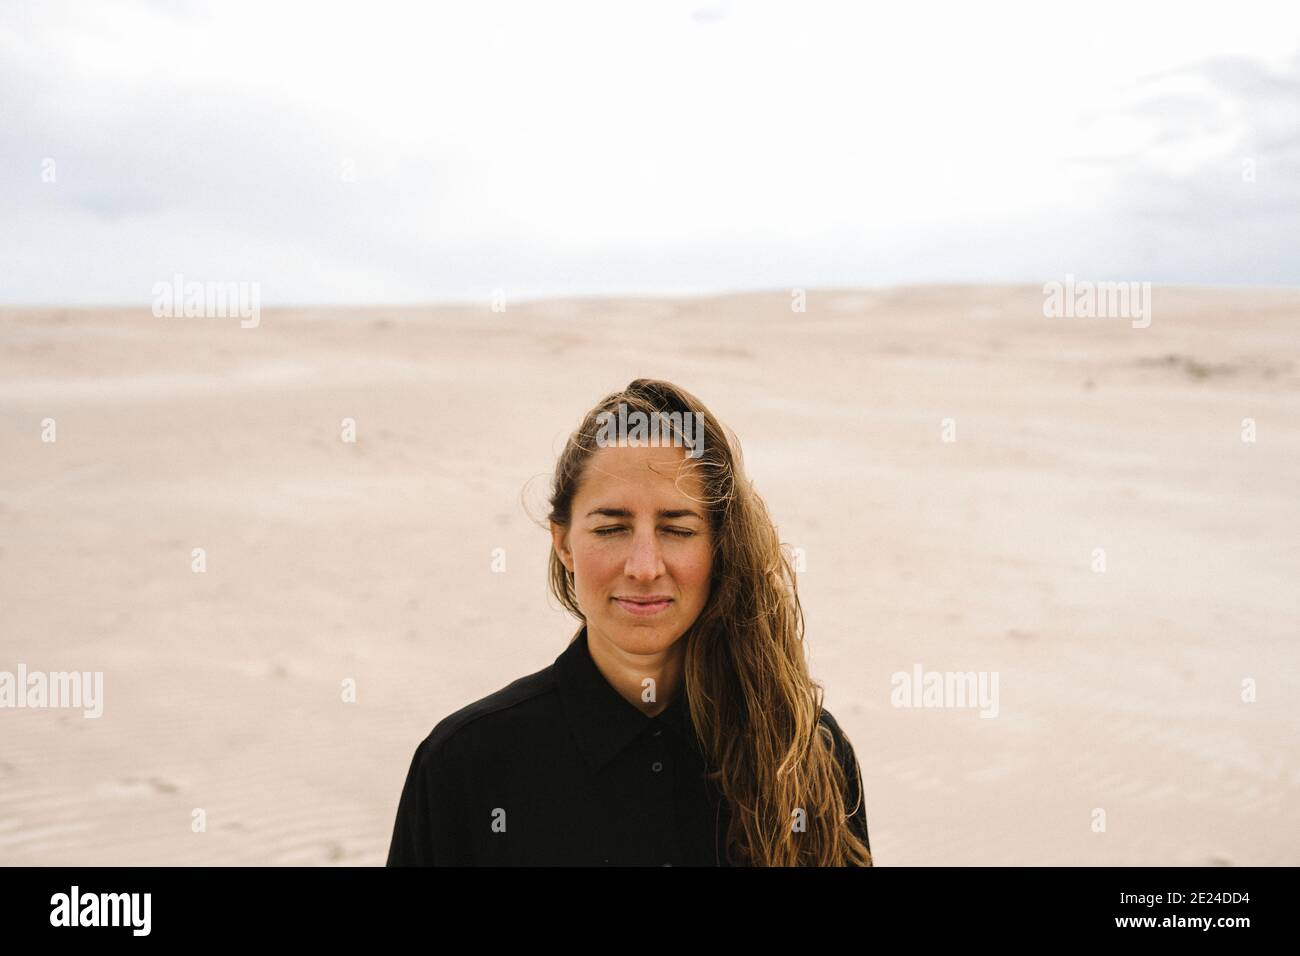 Femme avec les yeux fermés, dunes de sable sur fond Banque D'Images